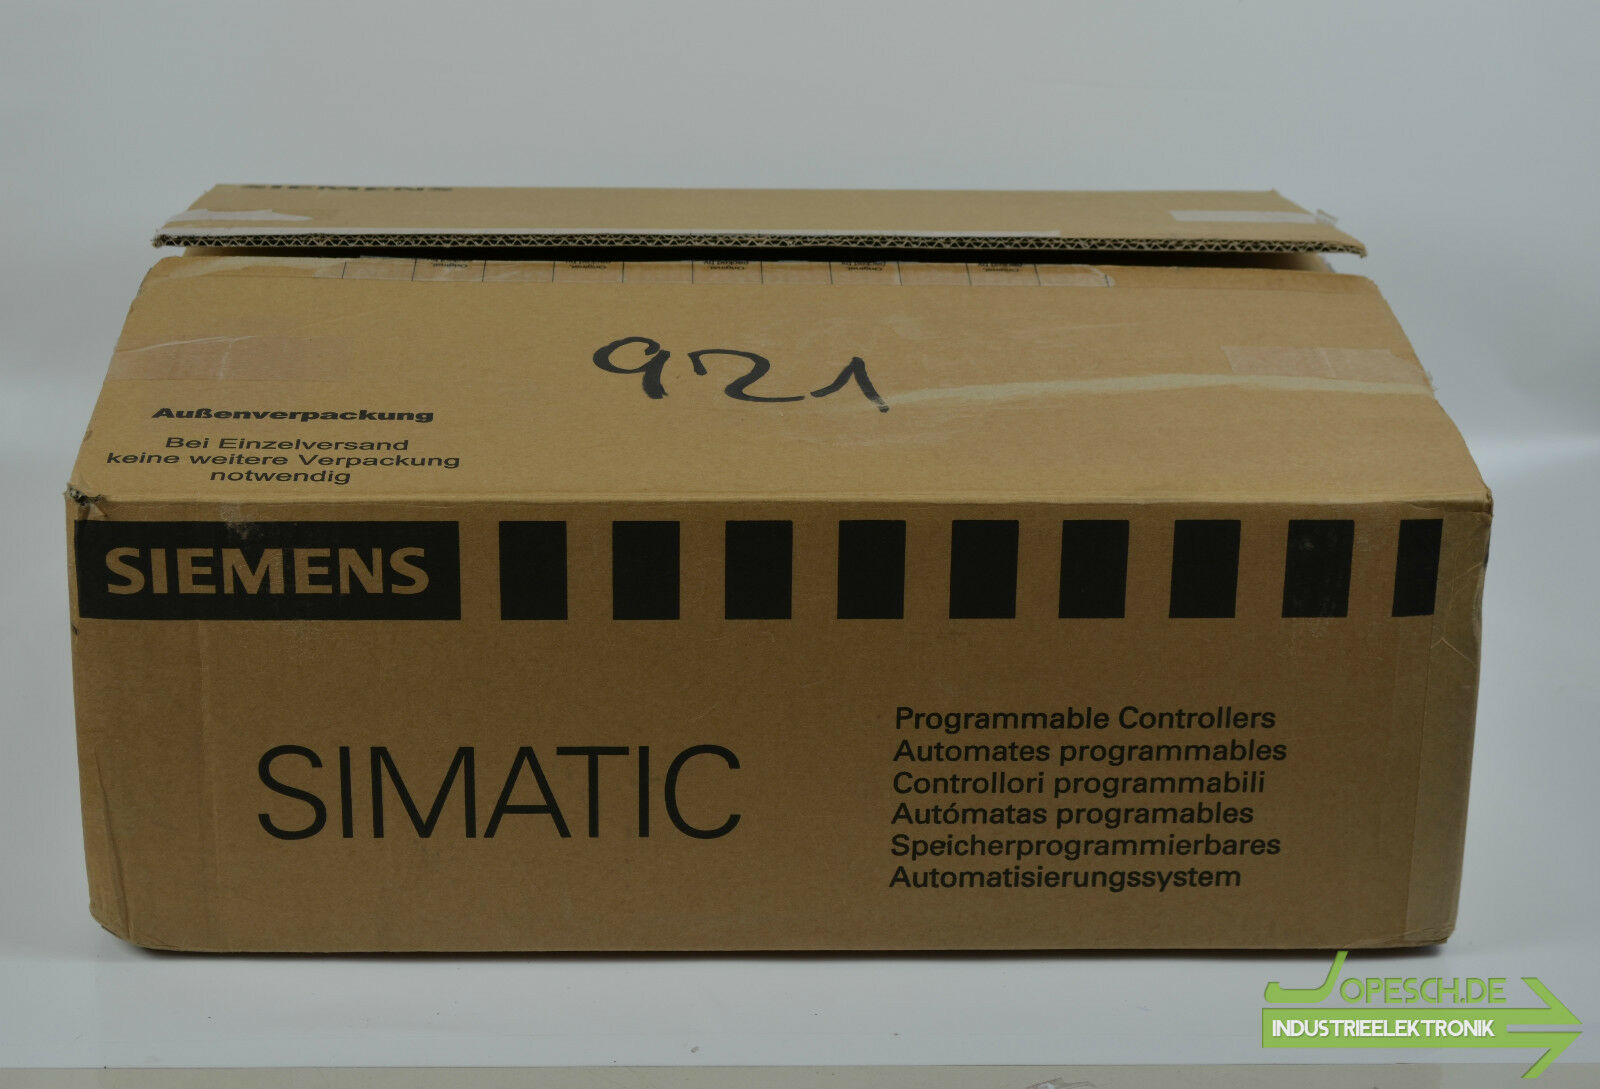 Siemens simatic IPC477D PRO 6AV7250- ( 6AV72500FC050HA0 )